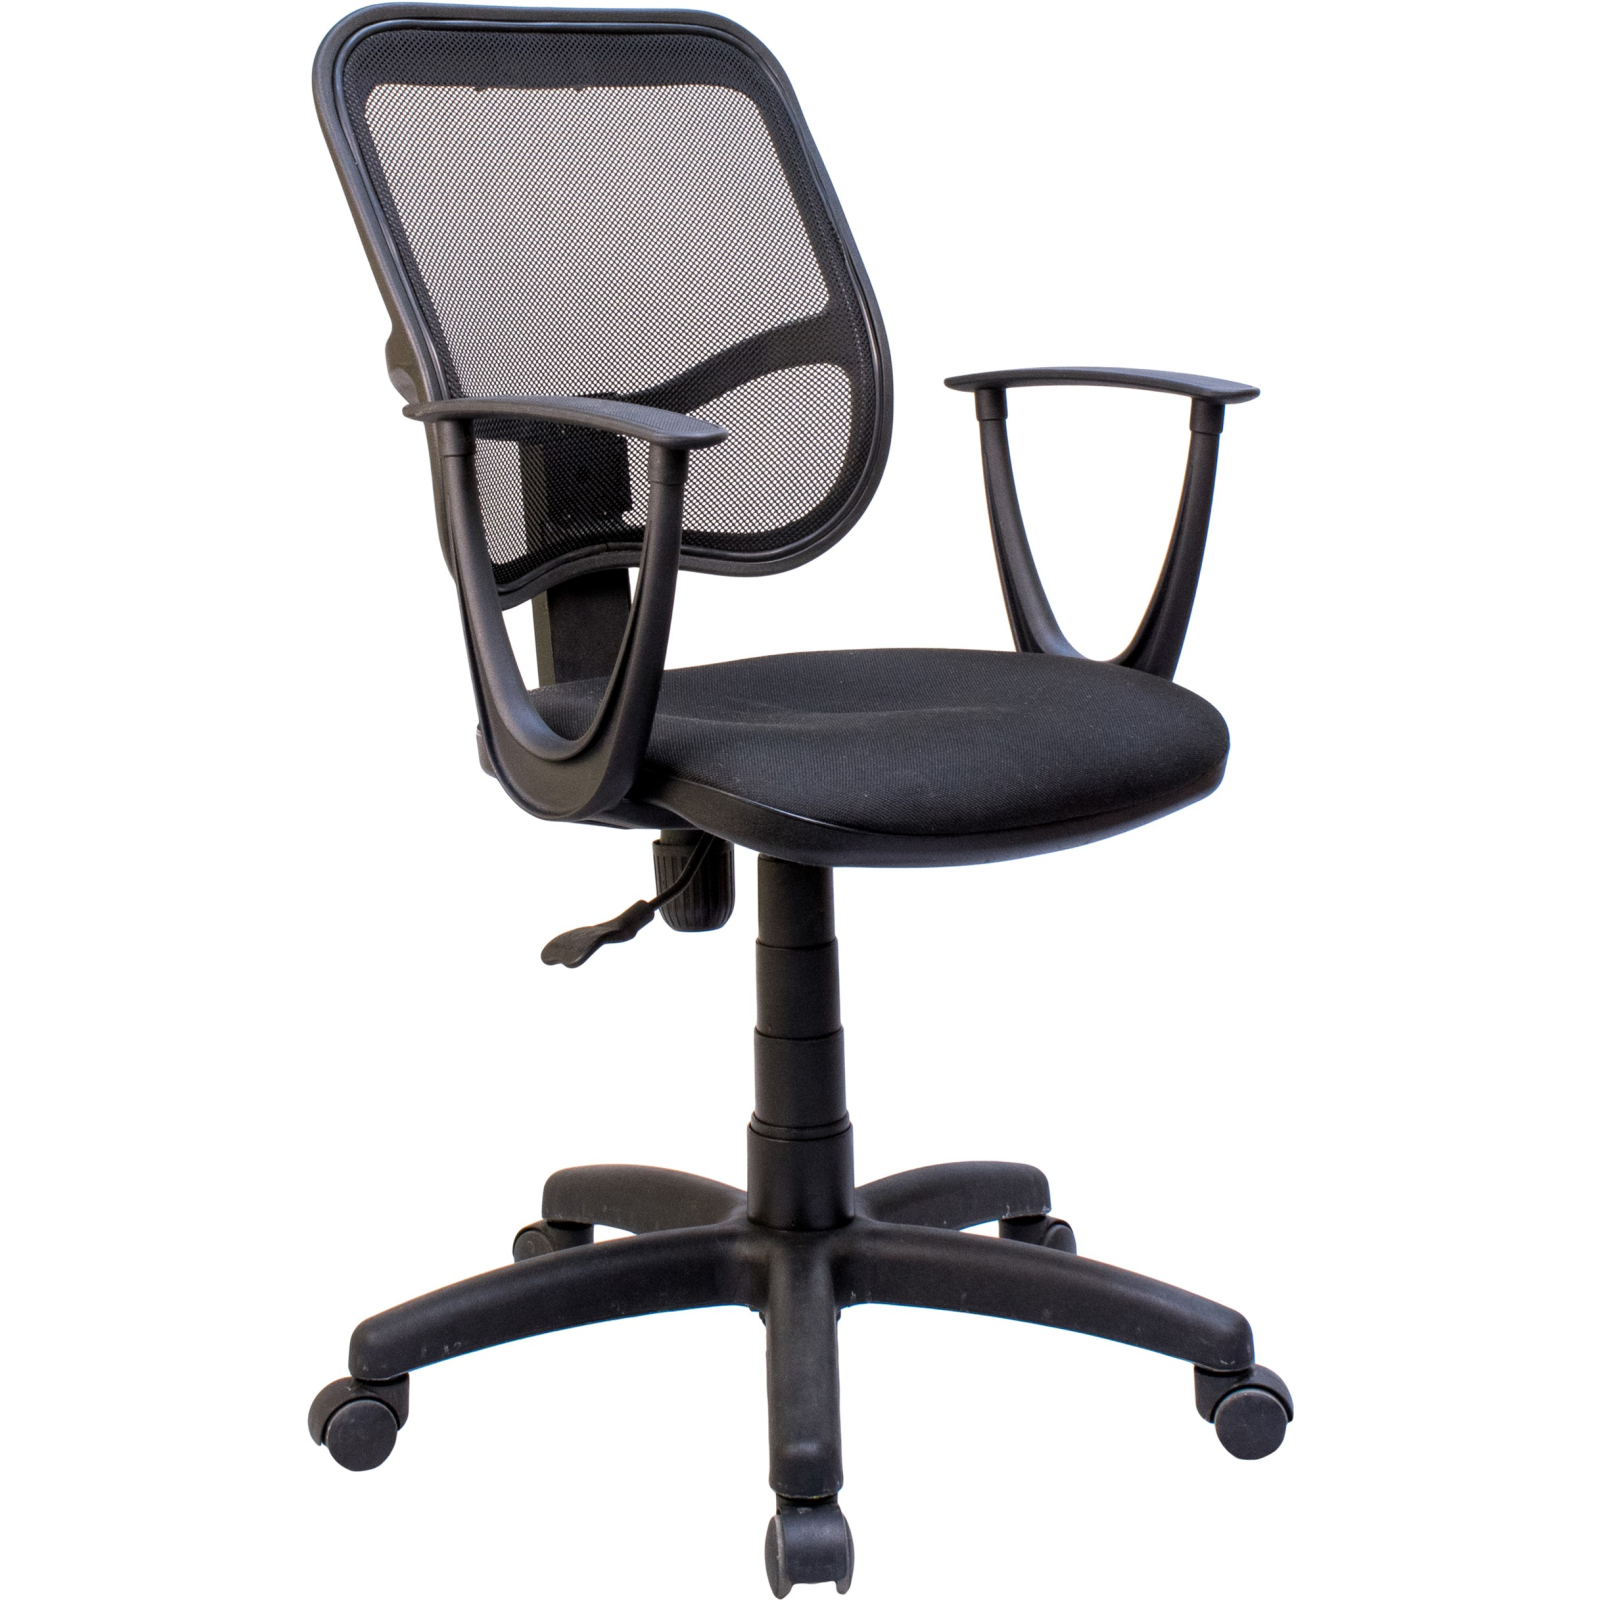 Офисное кресло Примтекс плюс Connect GTP С-11/M-01